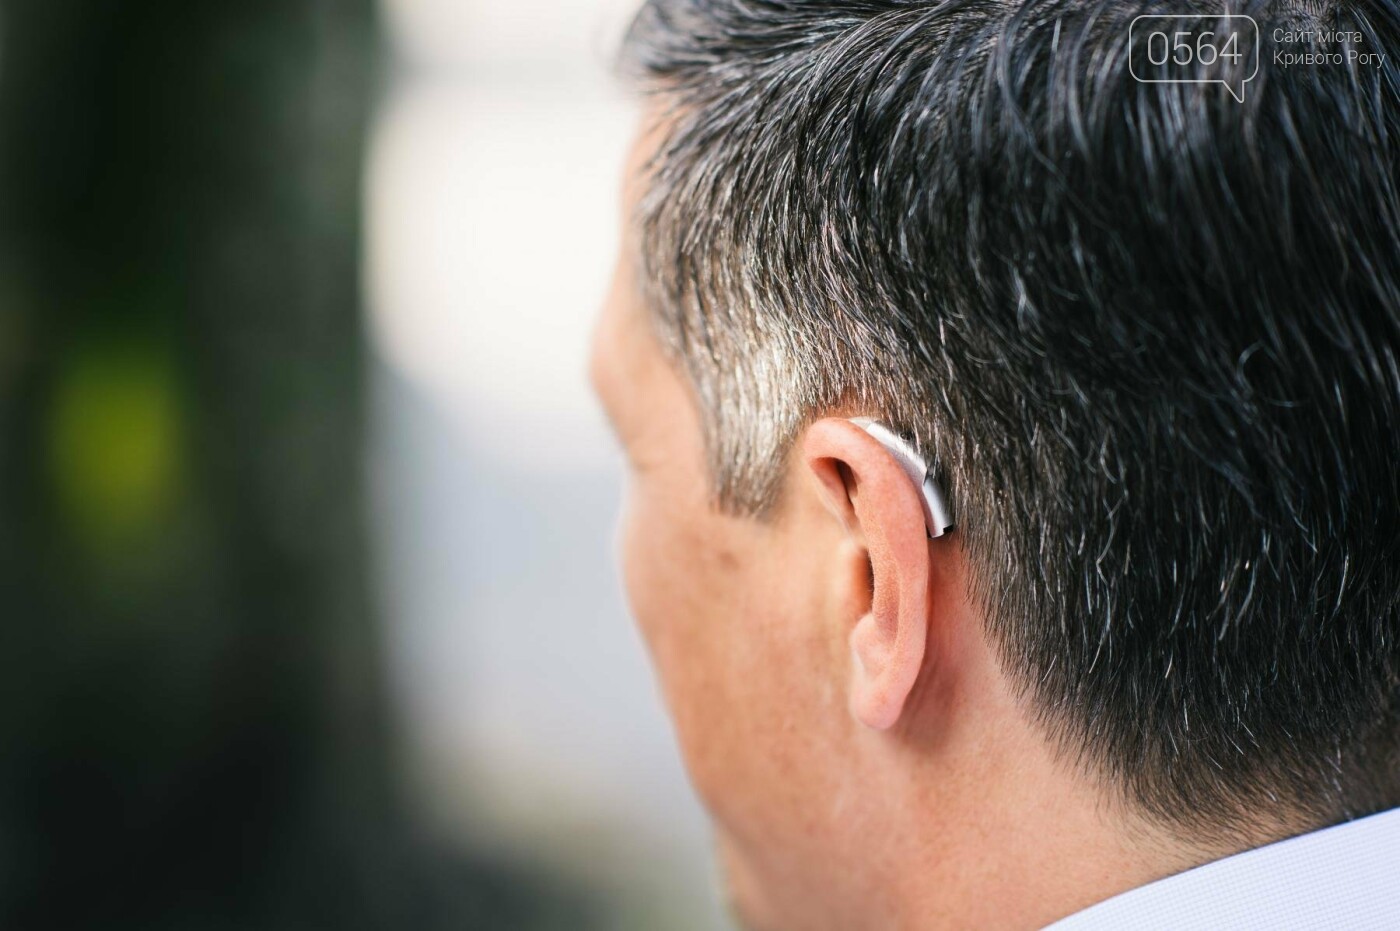 Відповіді на найпопулярніші питання про слухових апаратах Ви знайдете в цій статті